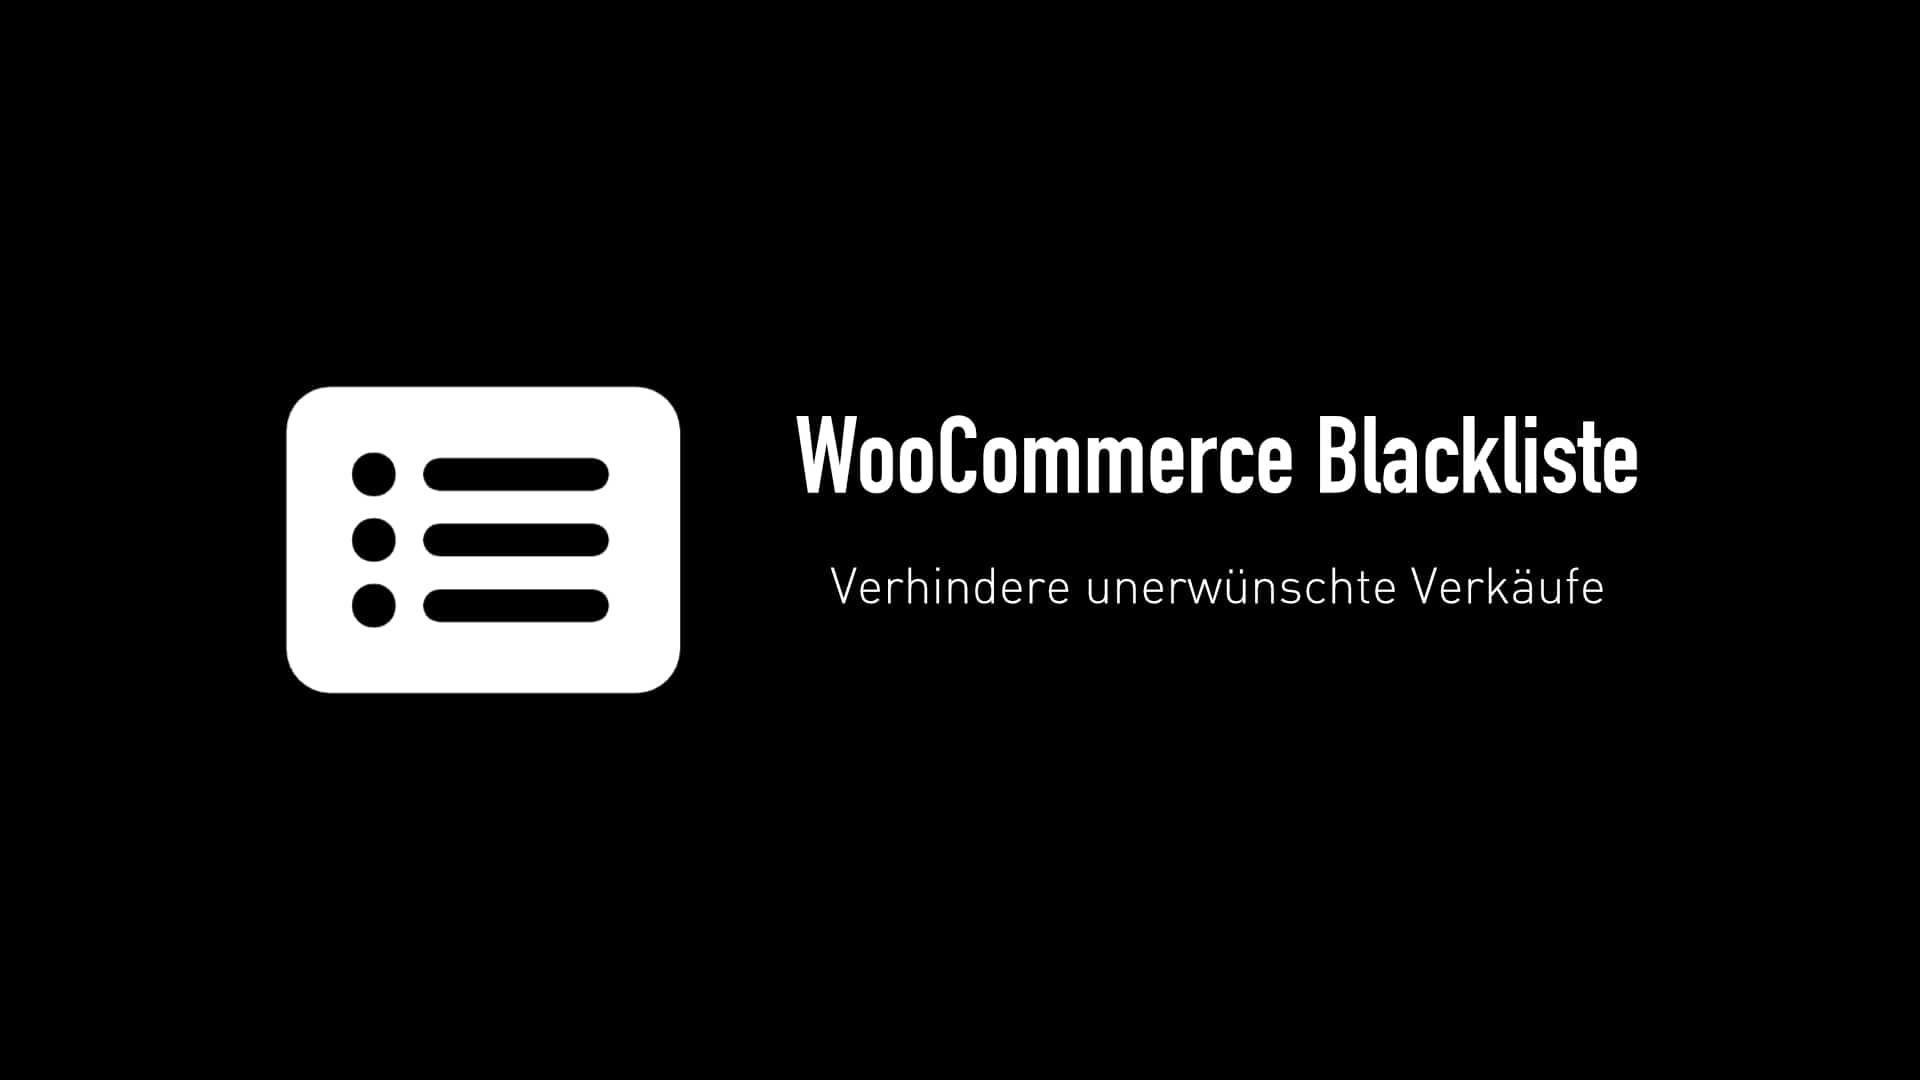 WooCommerce Blacklist – das neue Plugin von mir. Verhindere unerwünschte Verkäufe.